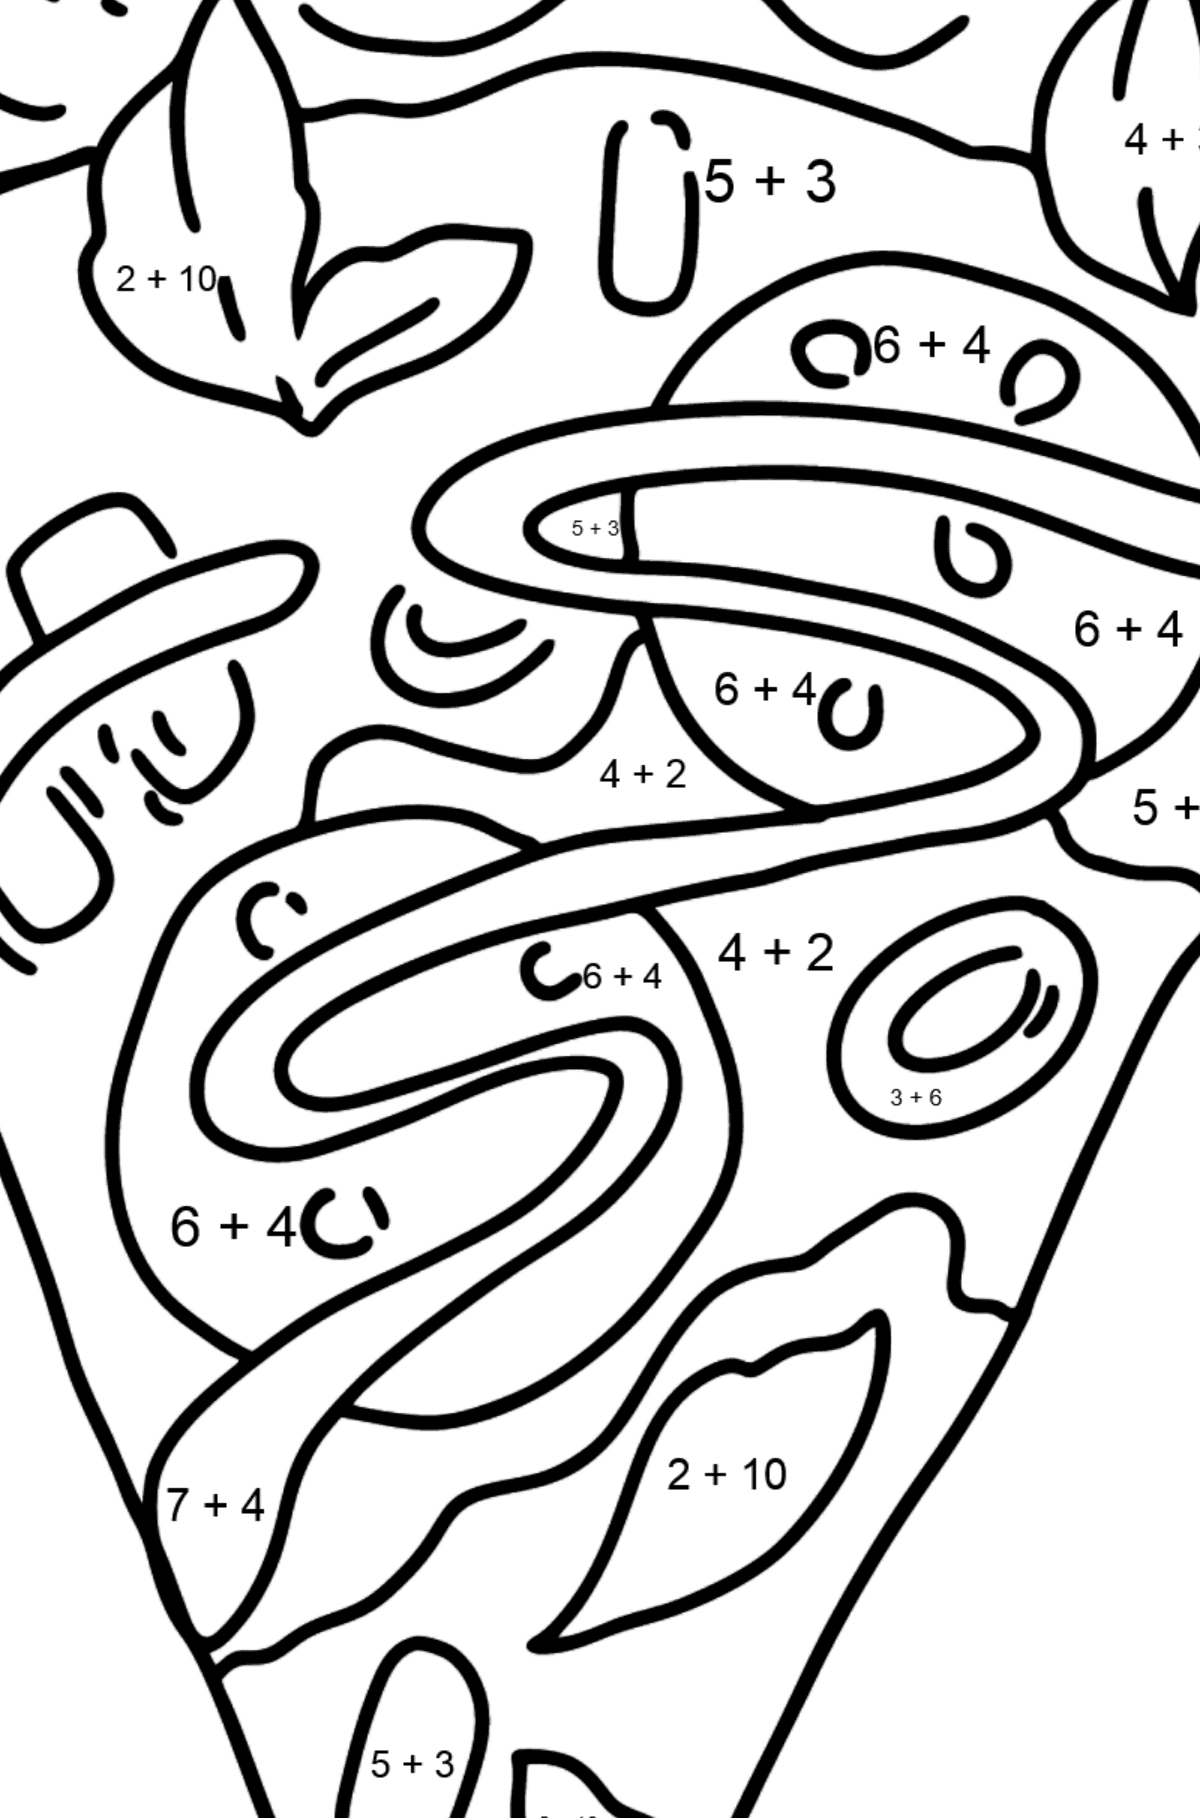 Розмальовка Піца з салямі - Математична Розмальовка Додавання для дітей